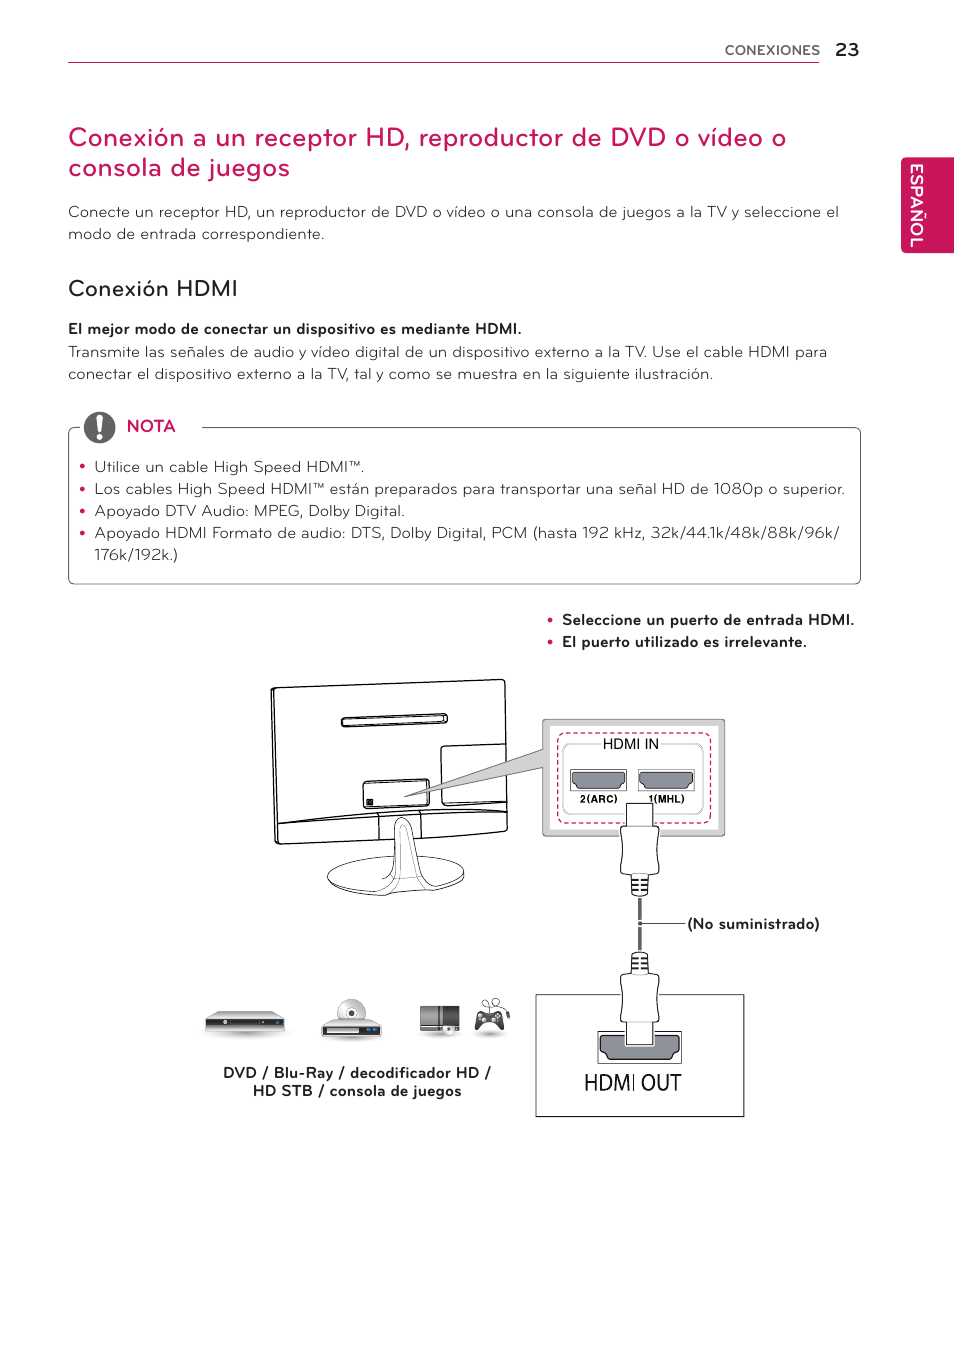 Conexión hdmi, 23 conexión a un receptor hd, reproductor, De dvd o vídeo o consola de juegos | LG 24MS53S-PZ Manual del usuario | Página 23 / 46